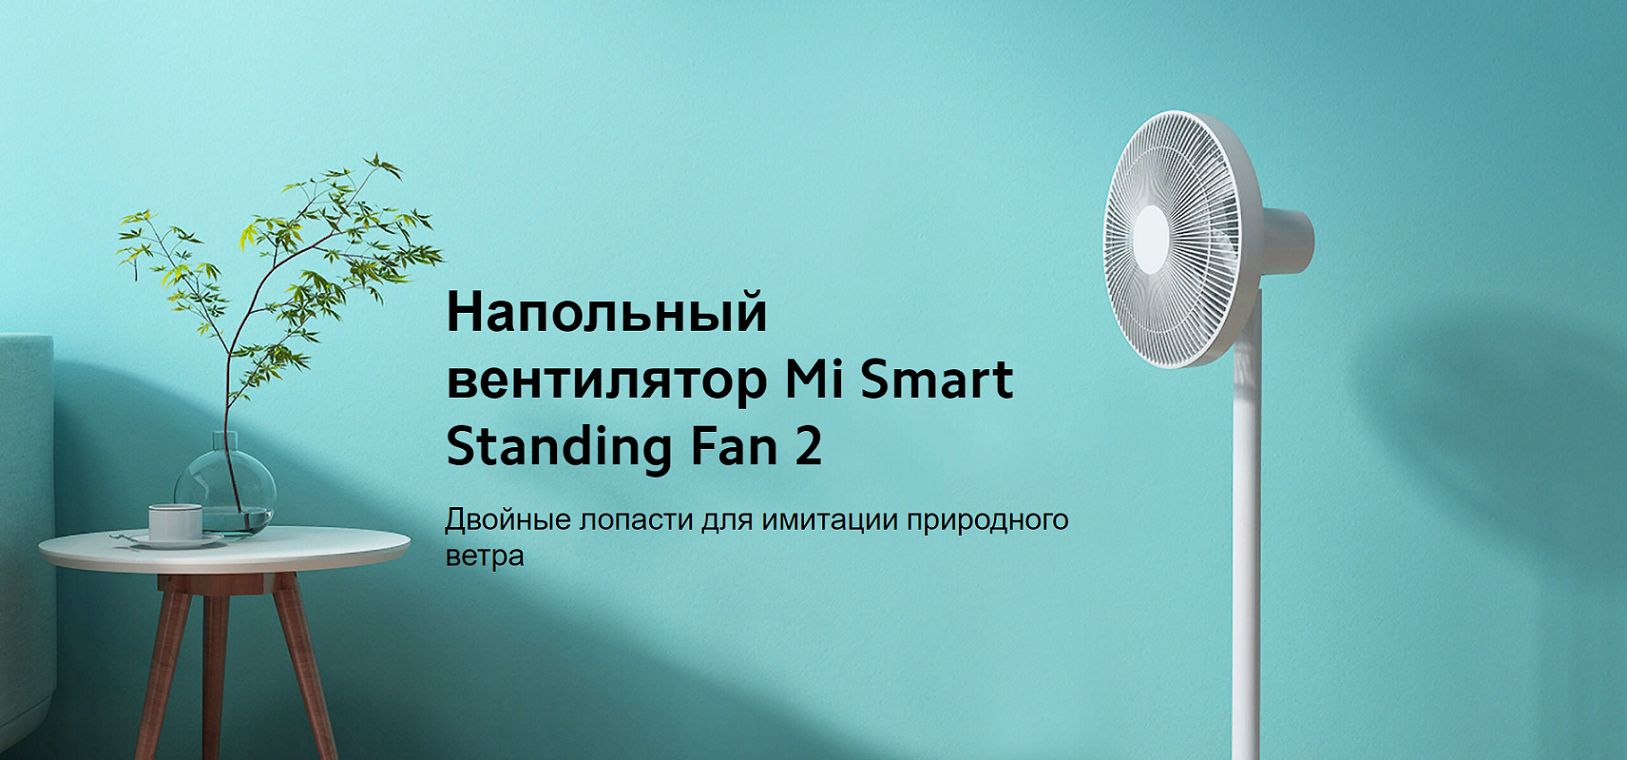 Smart standing fan. Напольный вентилятор mi Smart standing Fan 2. Xiaomi mi Smart standing Fan 2 eu bplds02dm (bhr4828gl). Напольный вентилятор Xiaomi mi Smart standing Fan 2 Lite, белый. Напольный вентилятор Xiaomi mi Smart standing Fan 2 eu bplds02dm (bhr4828gl) Rus.